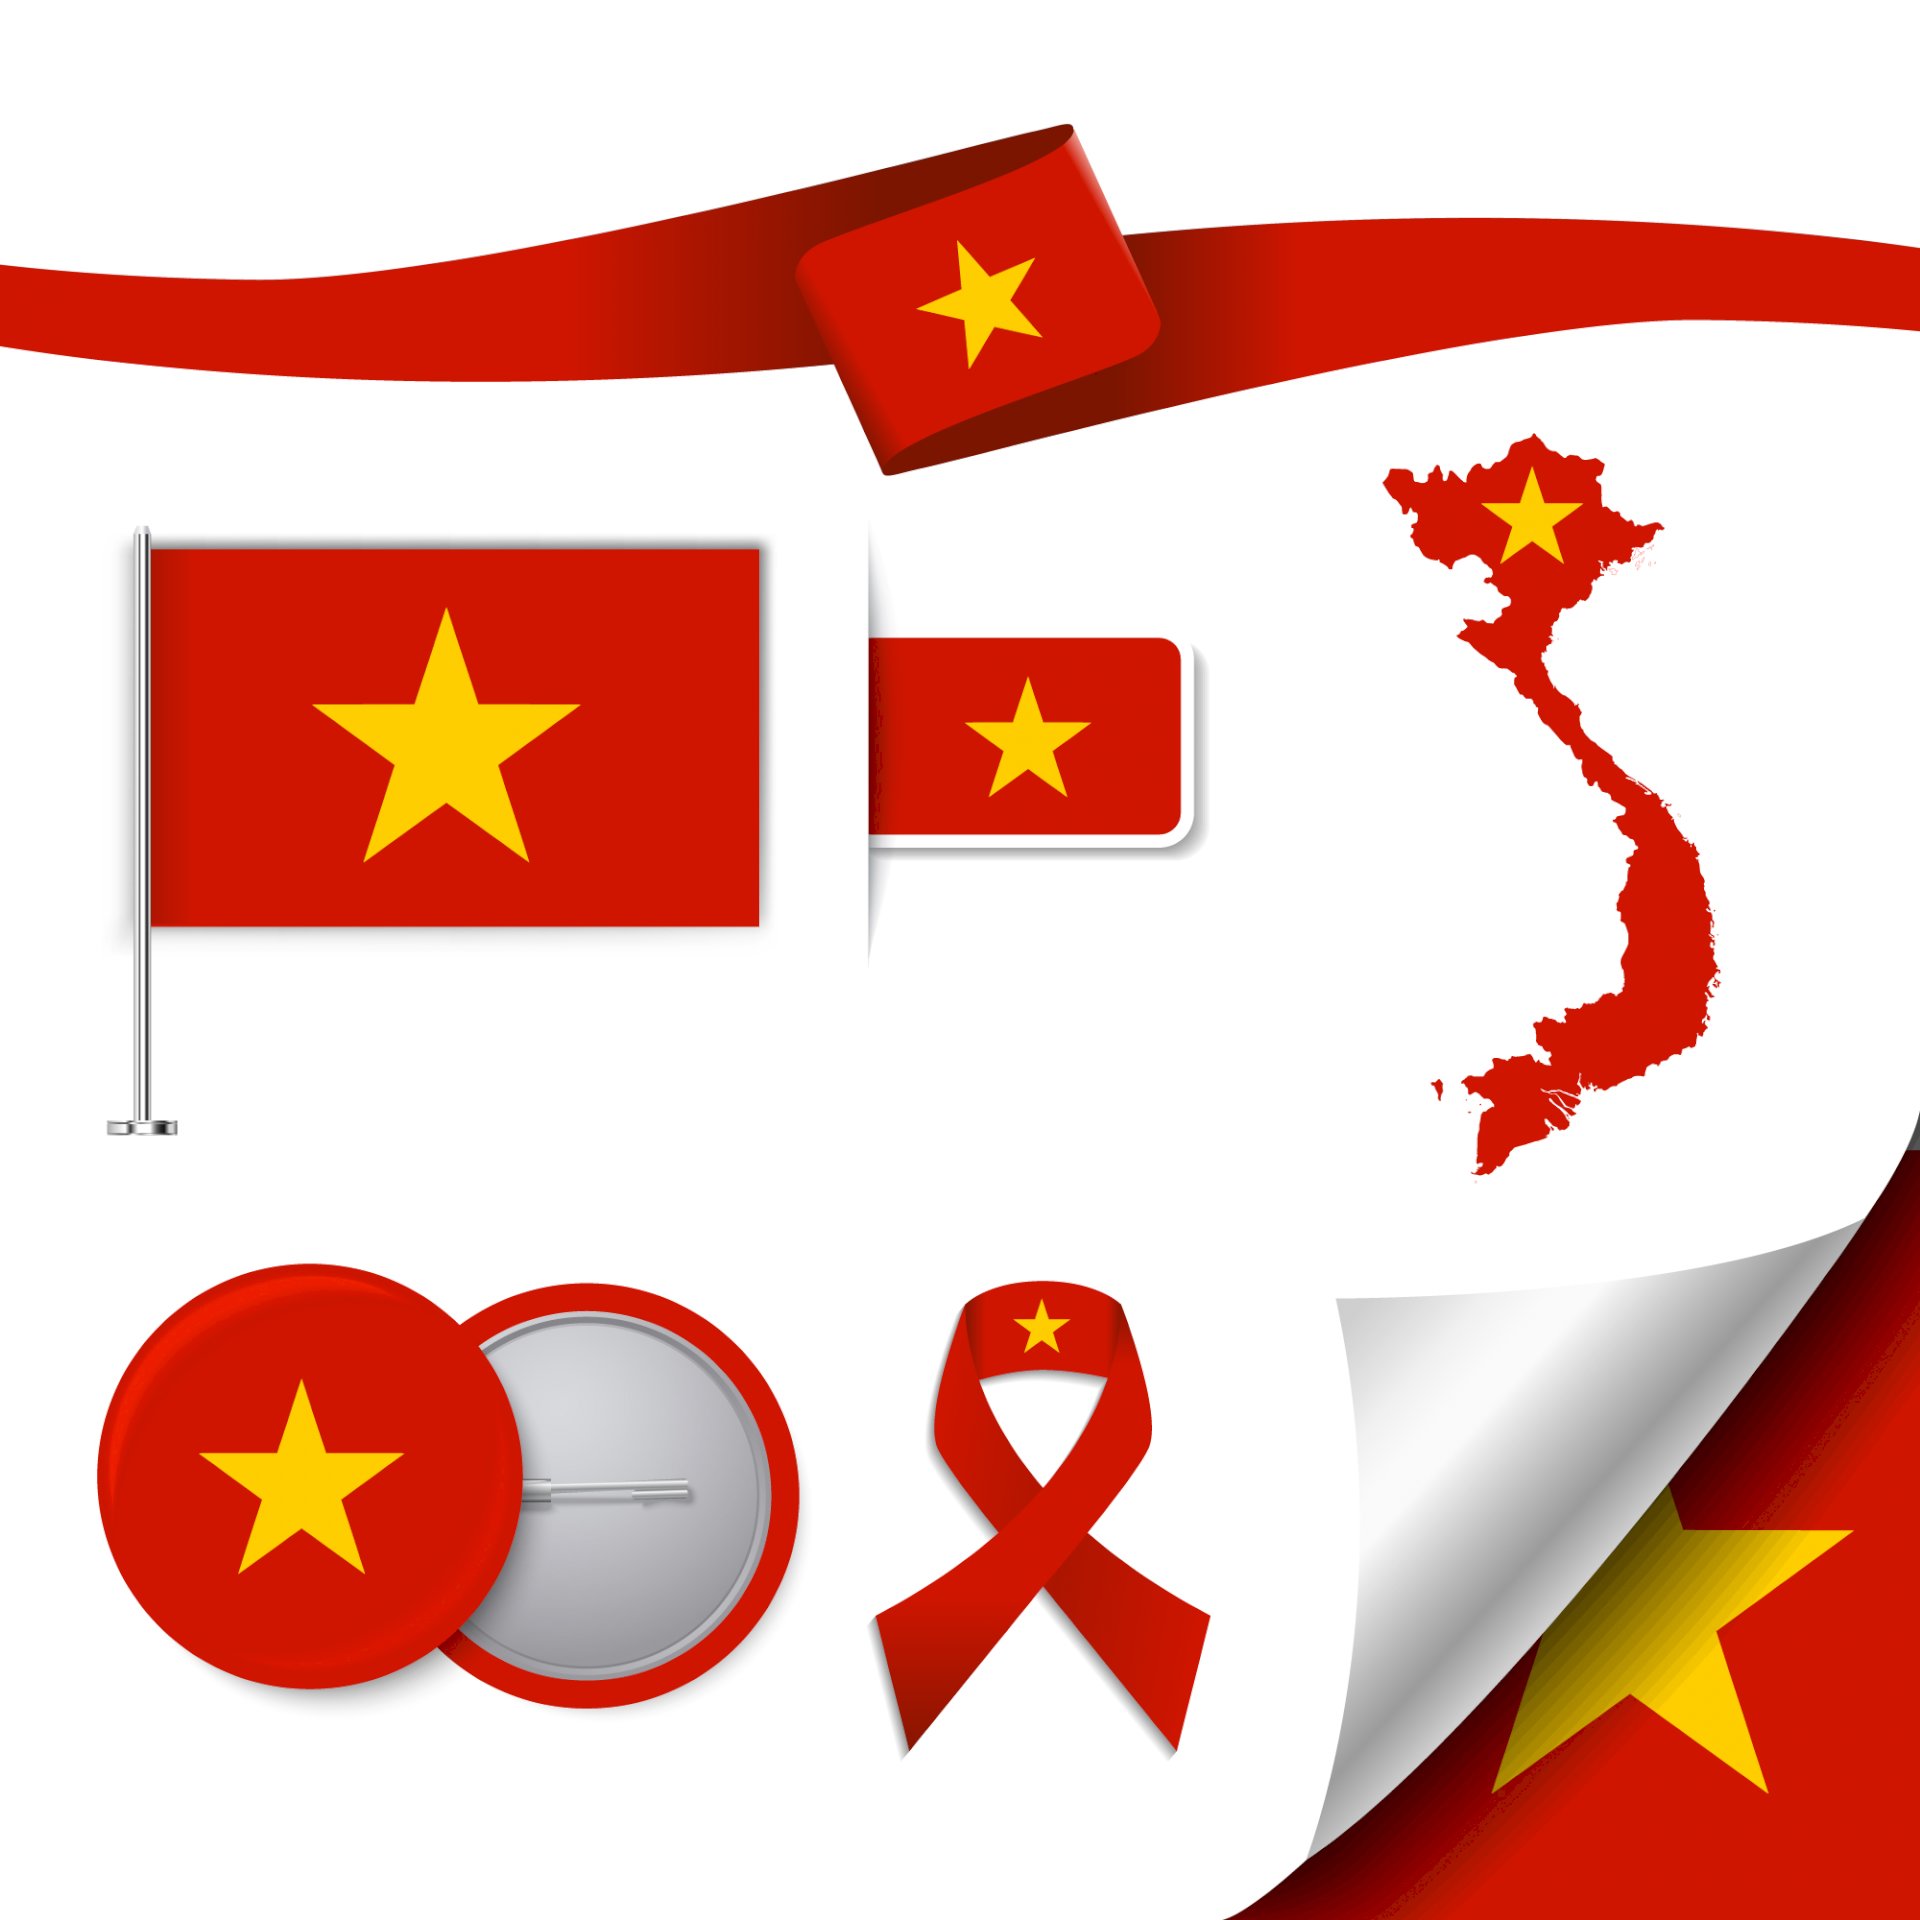 Logo lá cờ Việt Nam là biểu tượng độc nhất vô nhị mang đậm tính chất văn hóa và lịch sử. Cùng xem hình ảnh về hình dáng thanh thoát của lá cờ được thể hiện trên nhiều vật phẩm trang trí, từ quần áo đến đồ nội thất.